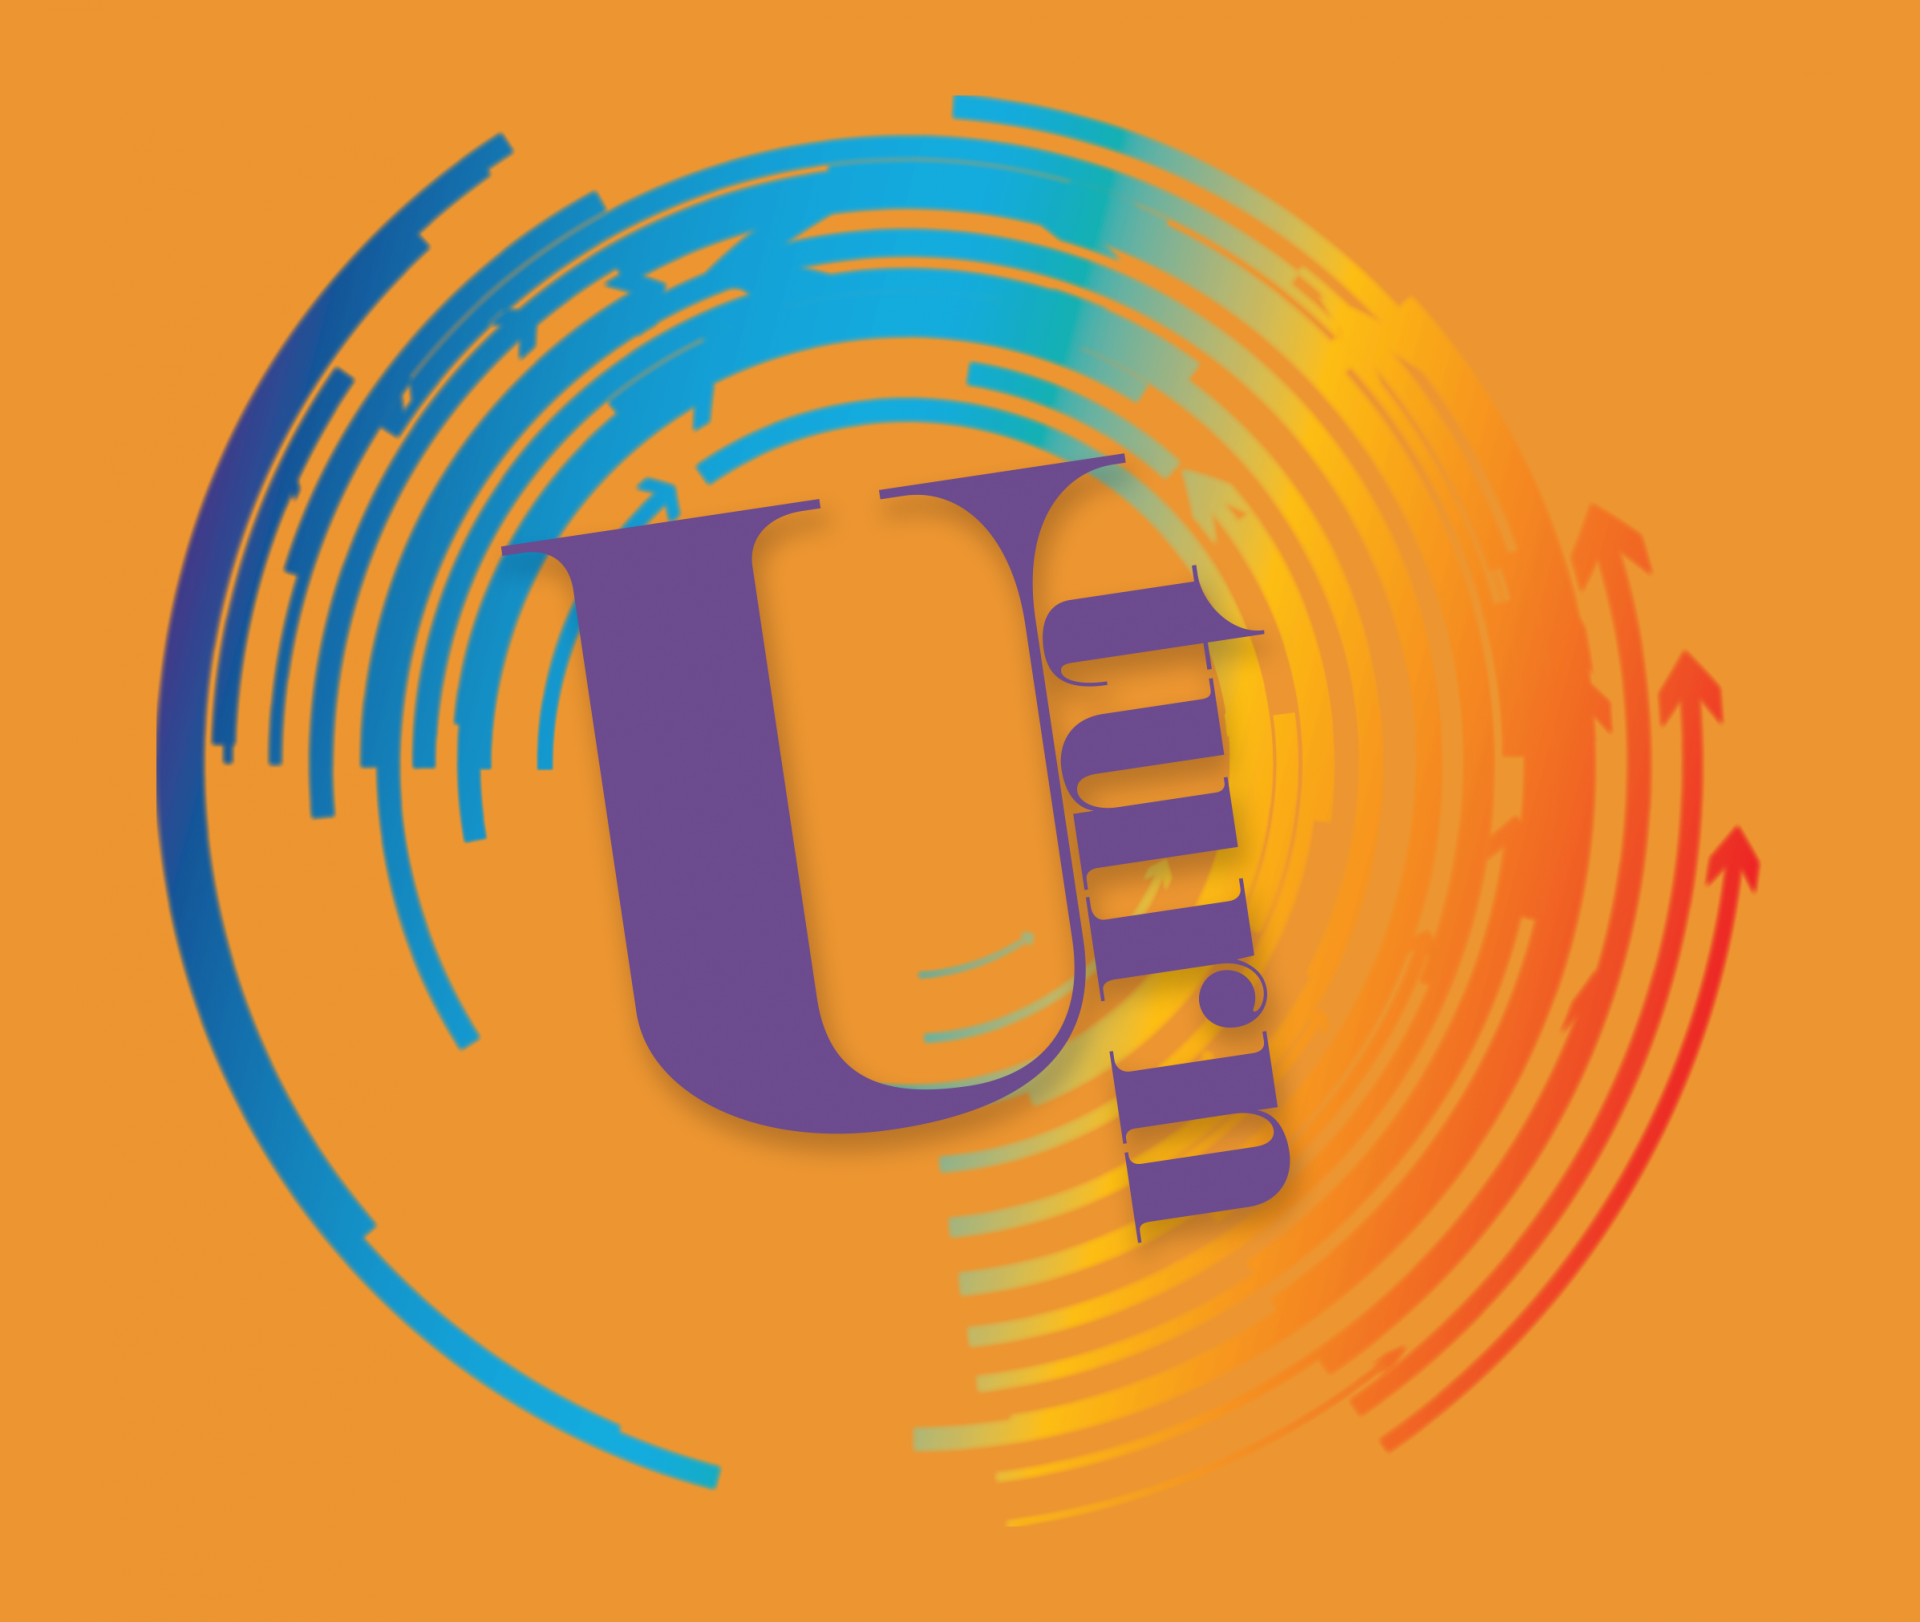 Uturn logo